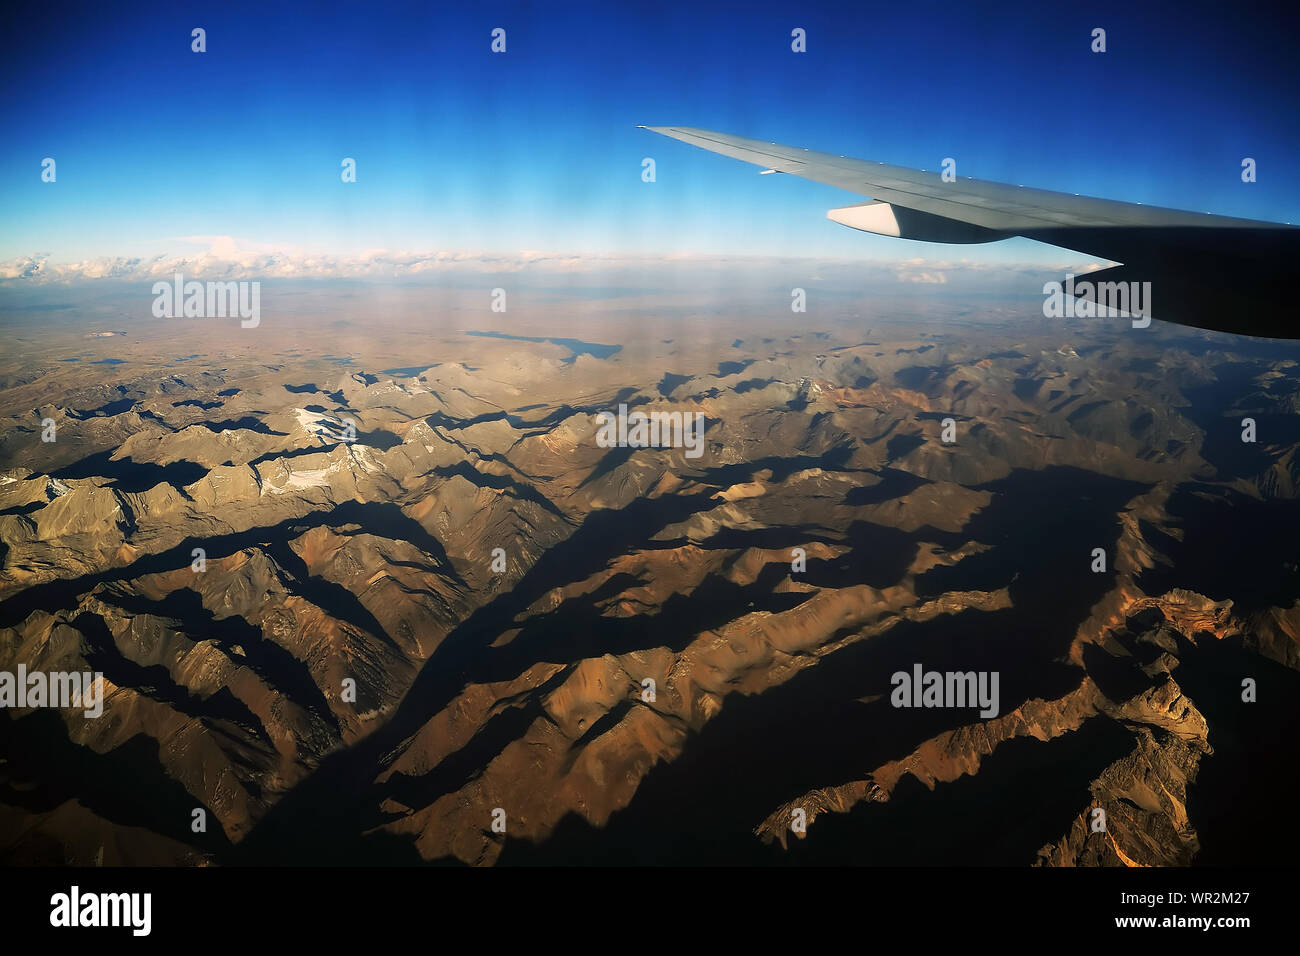 Blick auf Gebirge und Flugzeugflügel Stockfoto